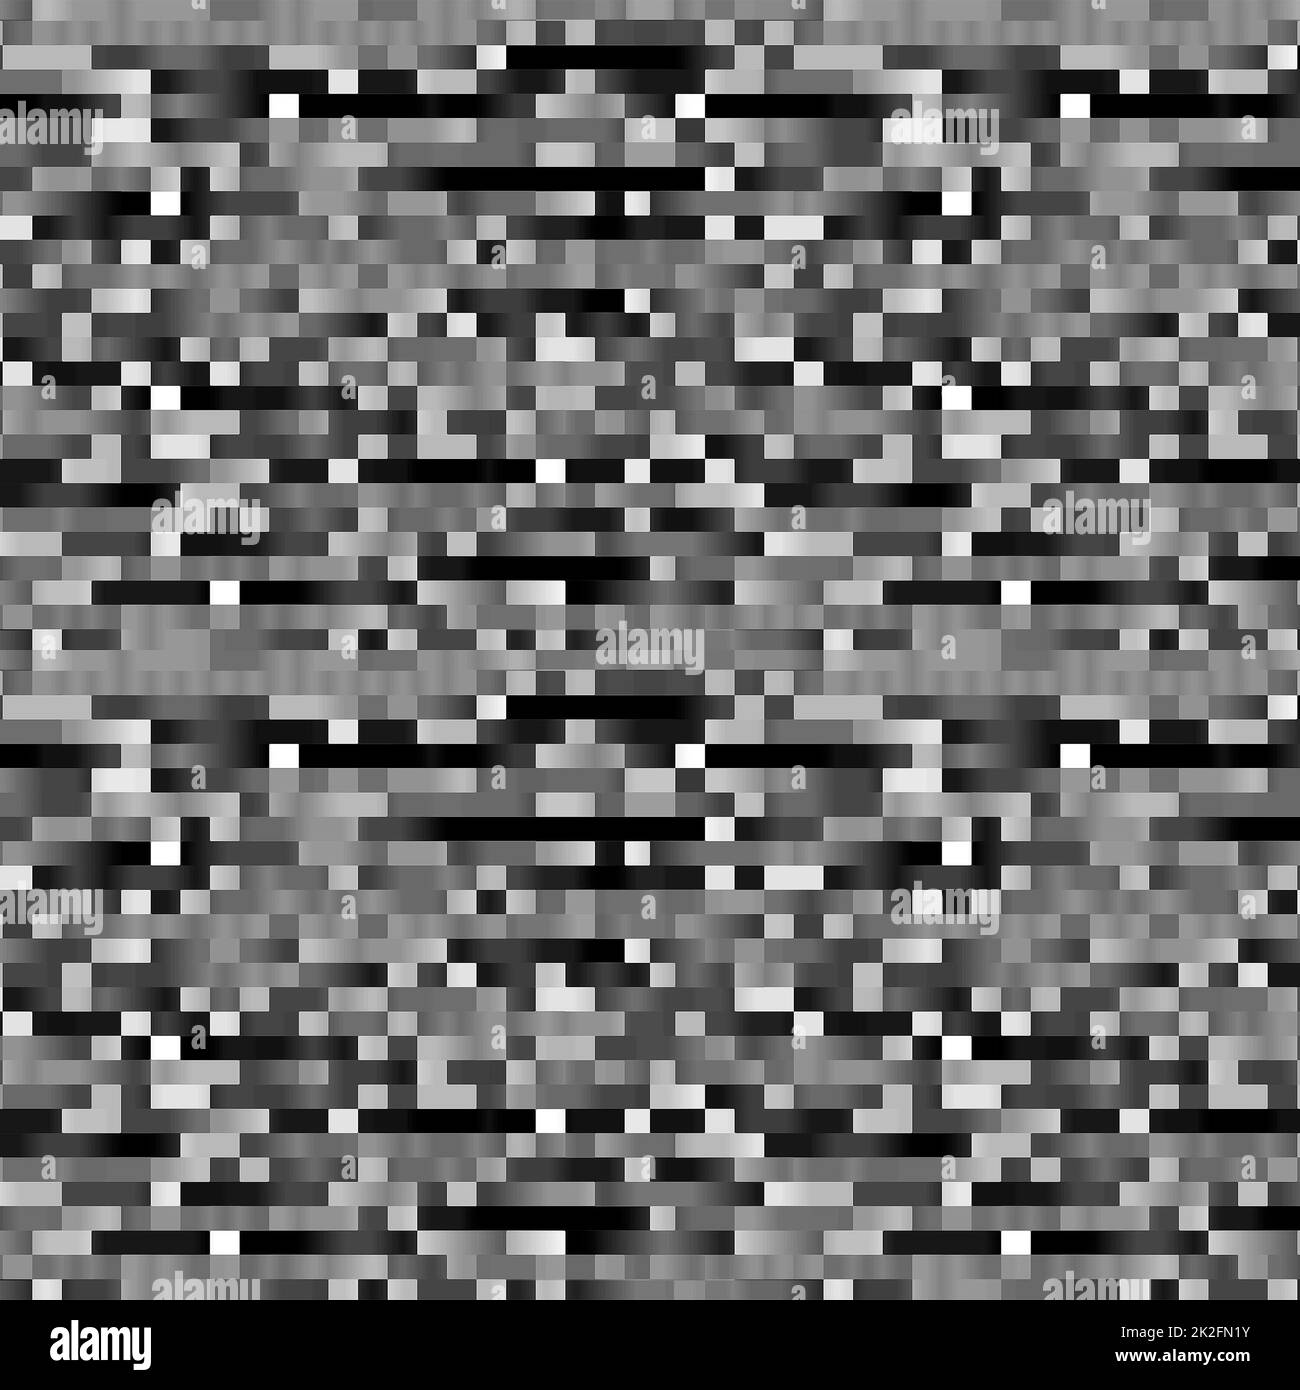 Pixelraster Helles Schwarz-Weiß-Muster Stockfoto